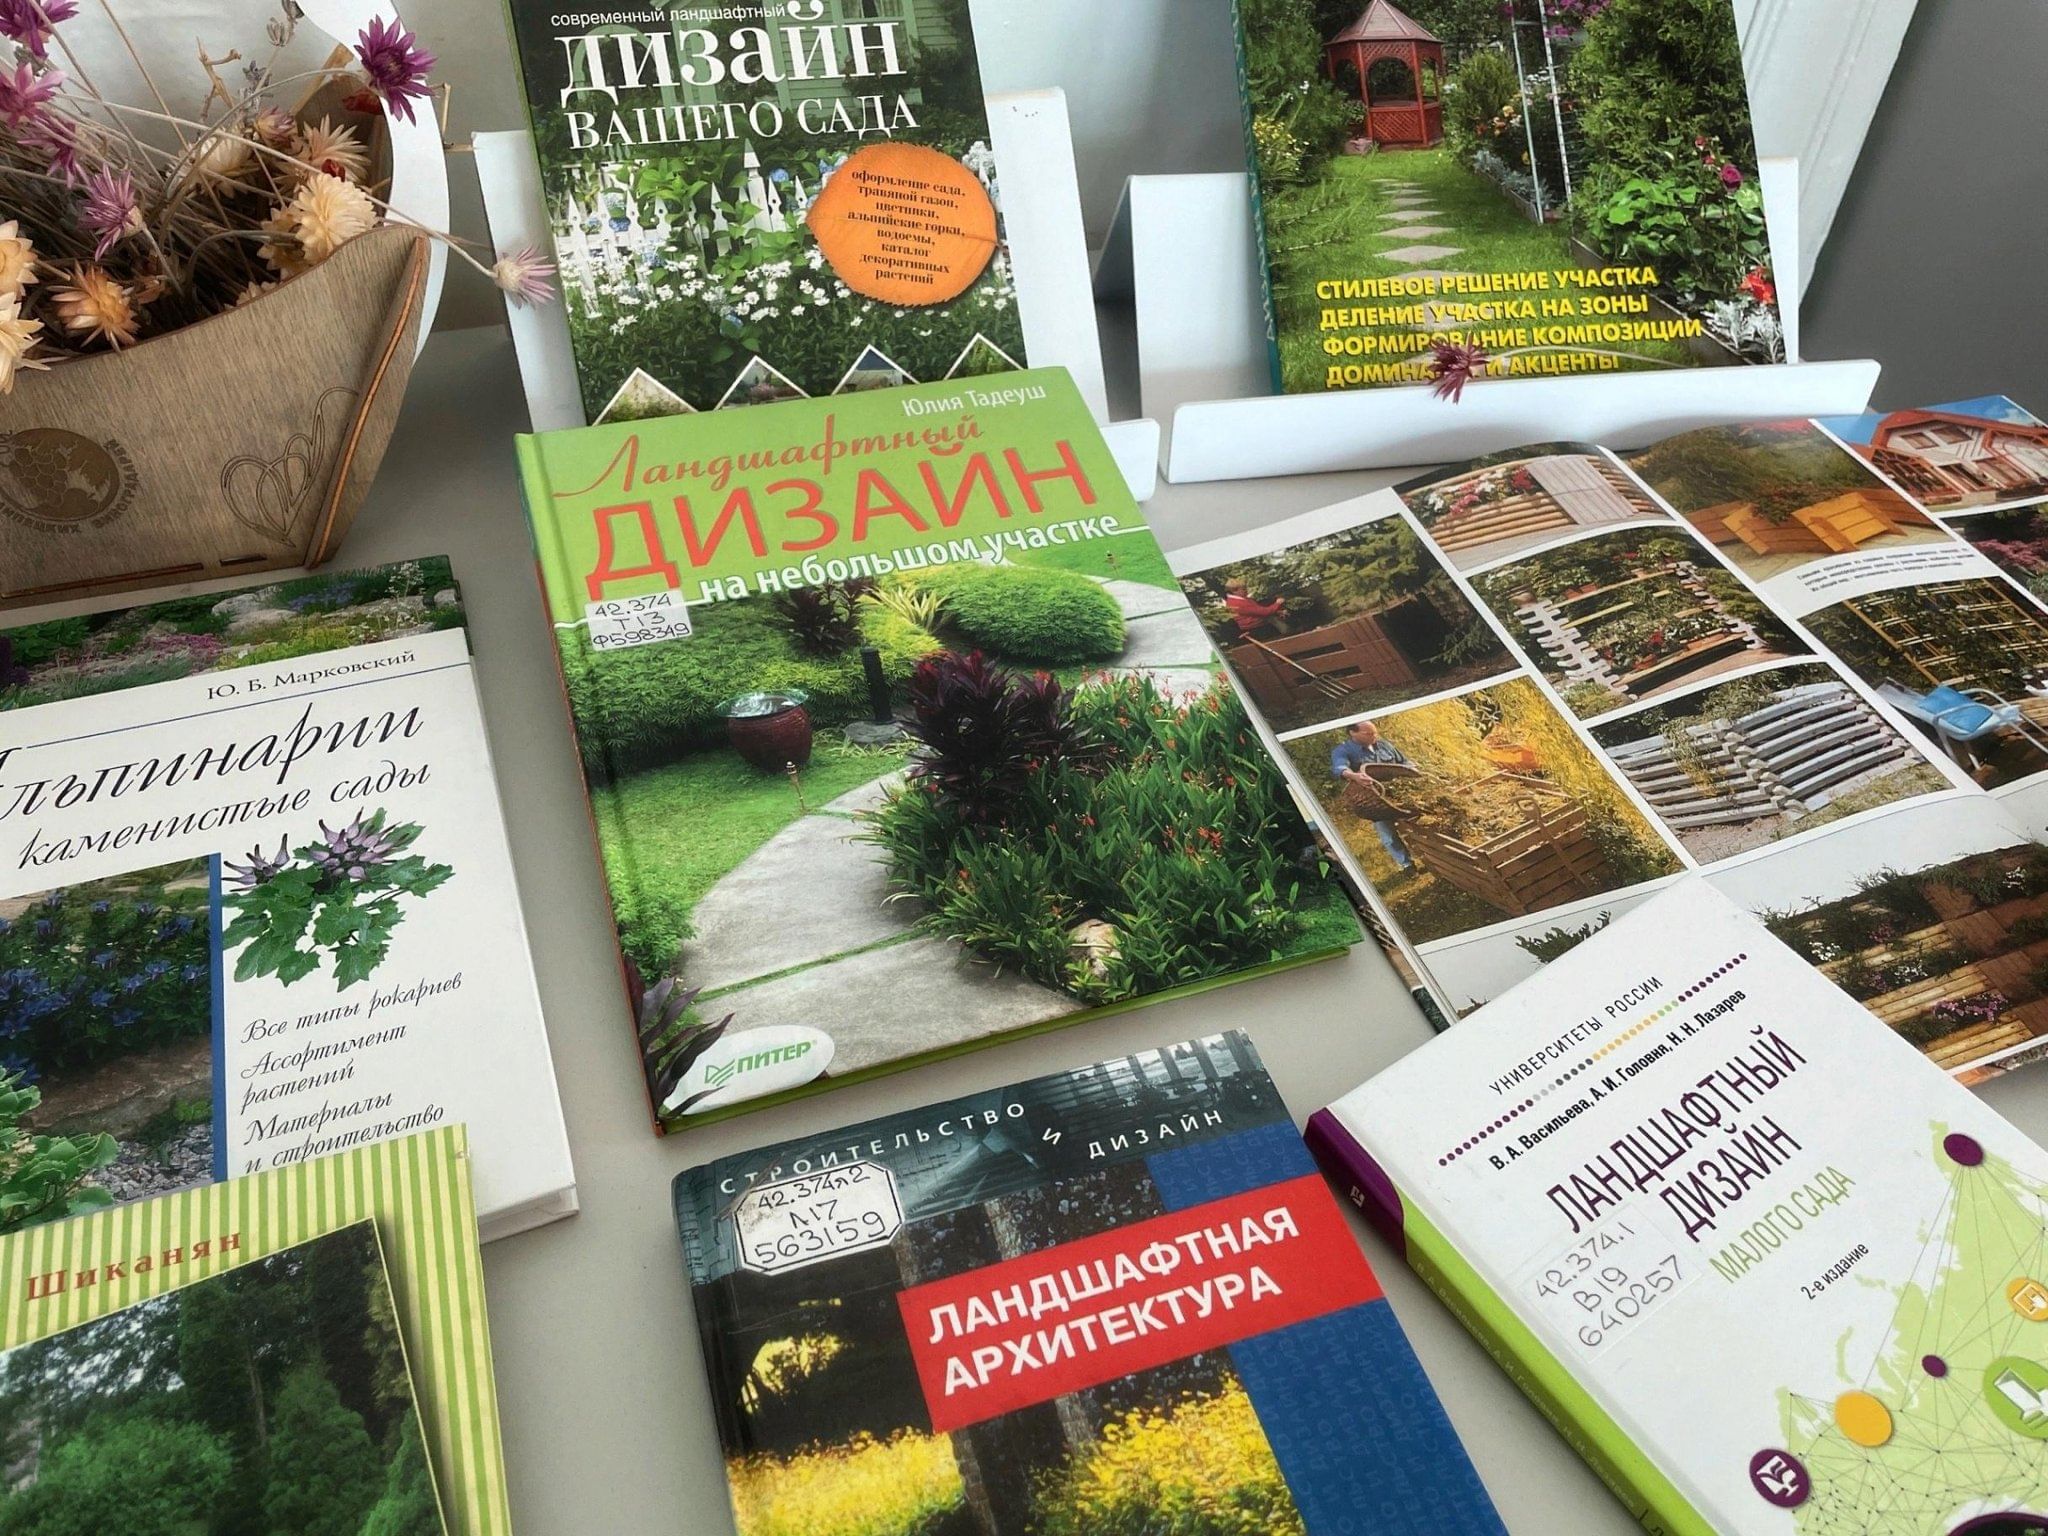 Книжная выставка «Ландшафтный дизайн вашего сада» 2023, Липецк — дата и место проведения, программа мероприятия.